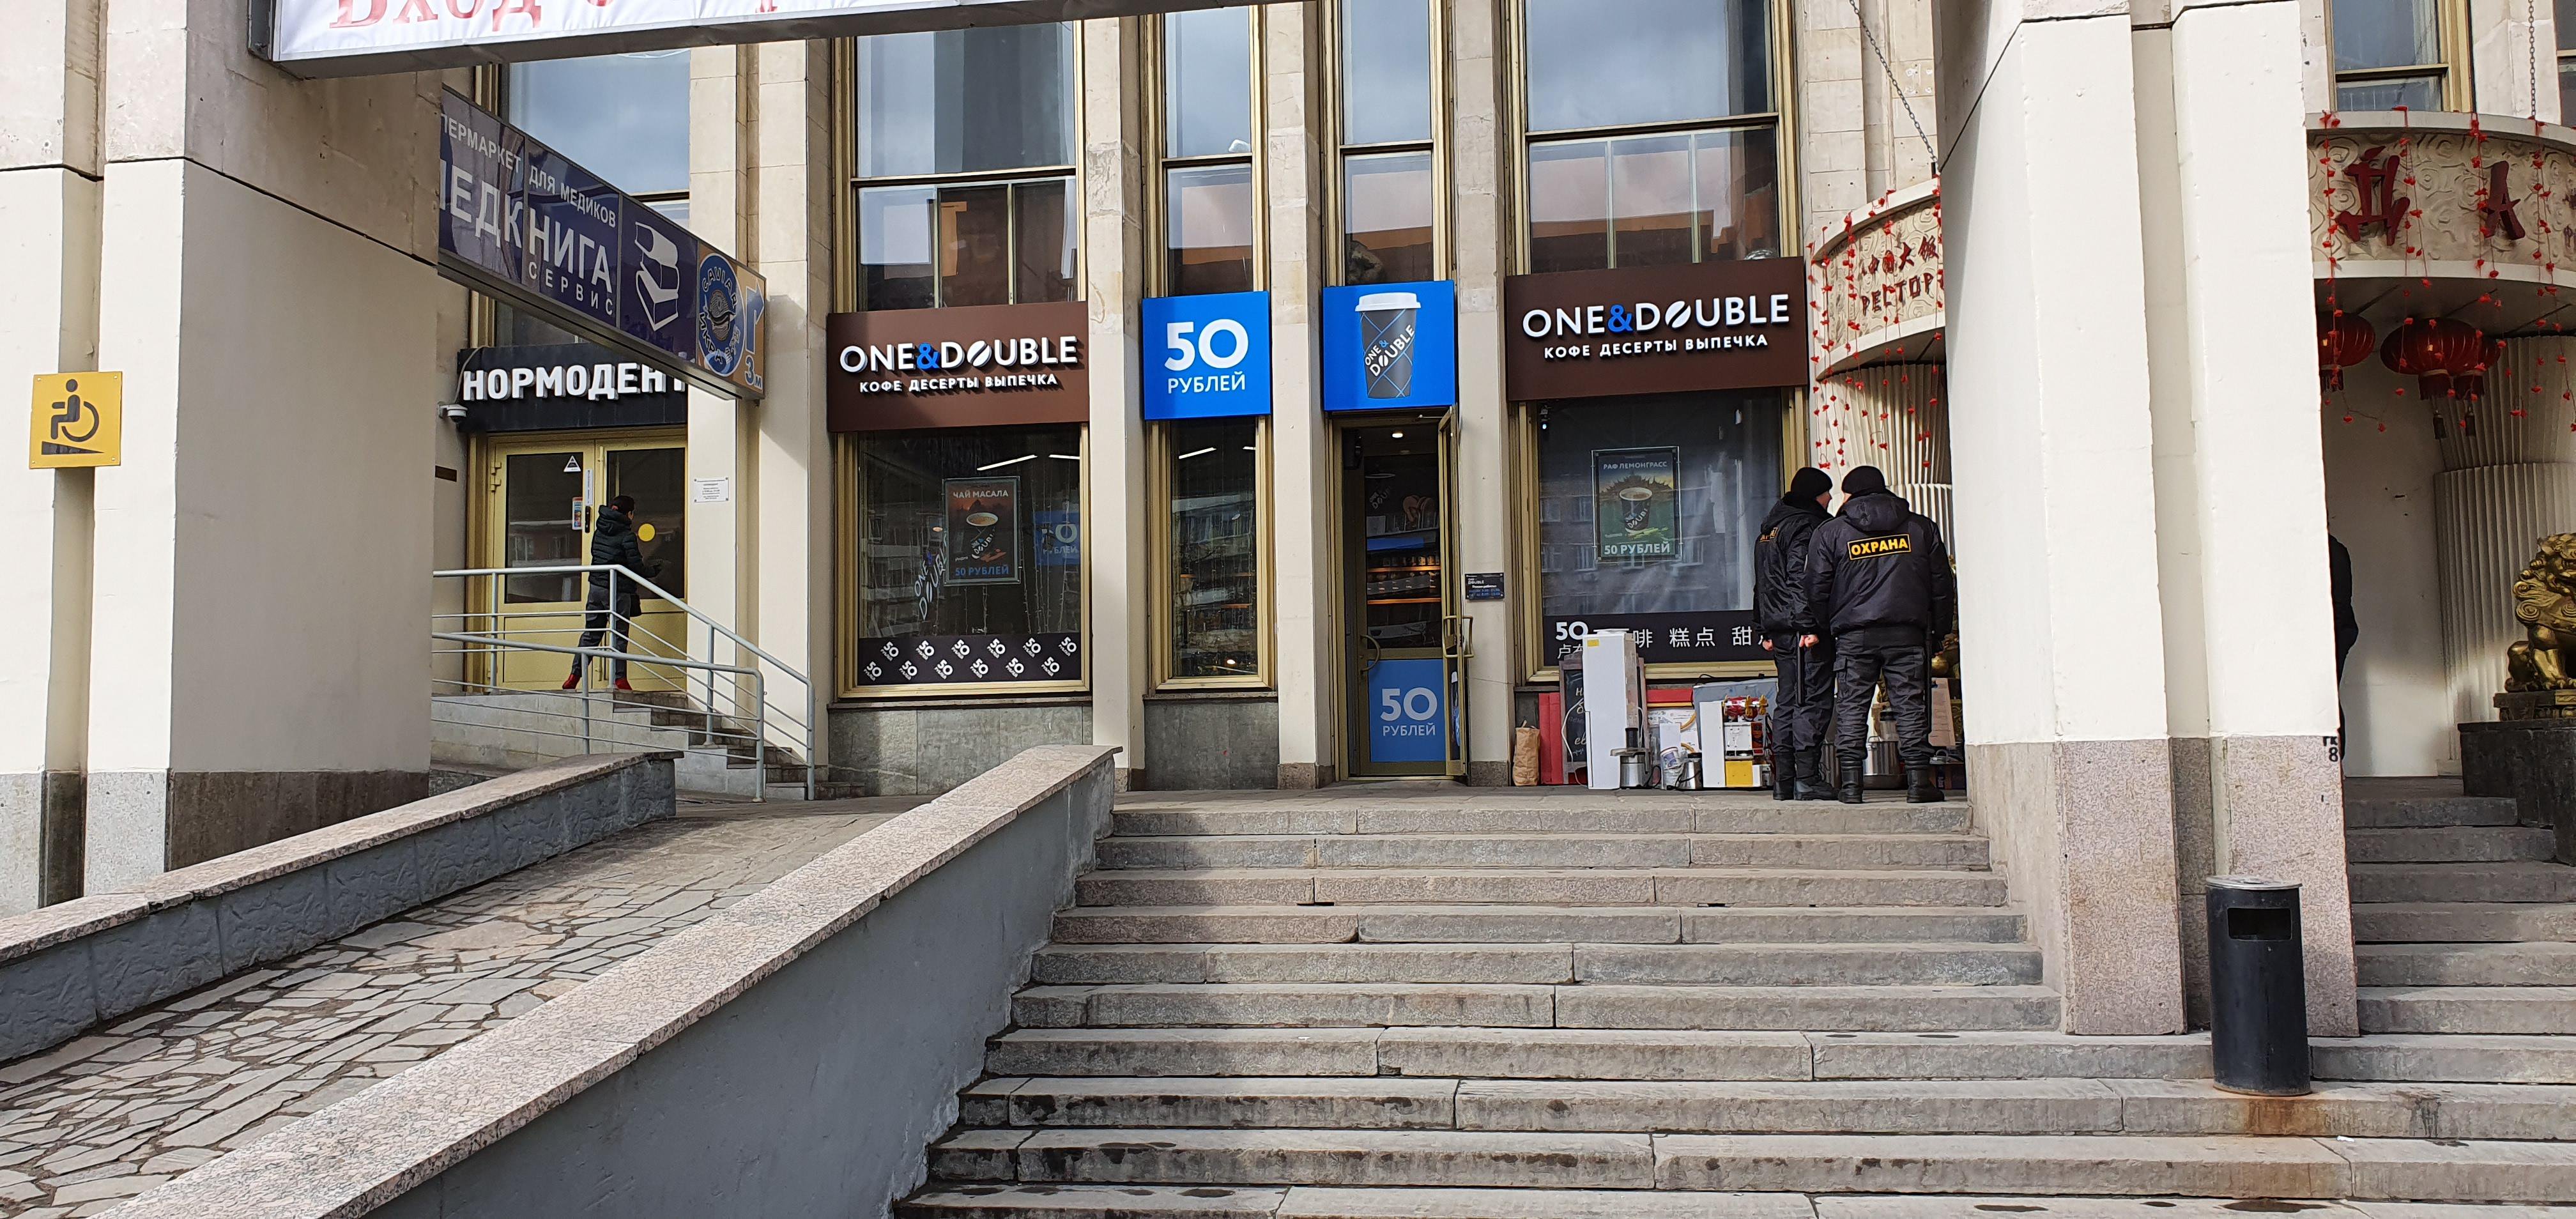 One & Double, сеть кофеен фиксированных цен, Комсомольский проспект, 28 (1 этаж)